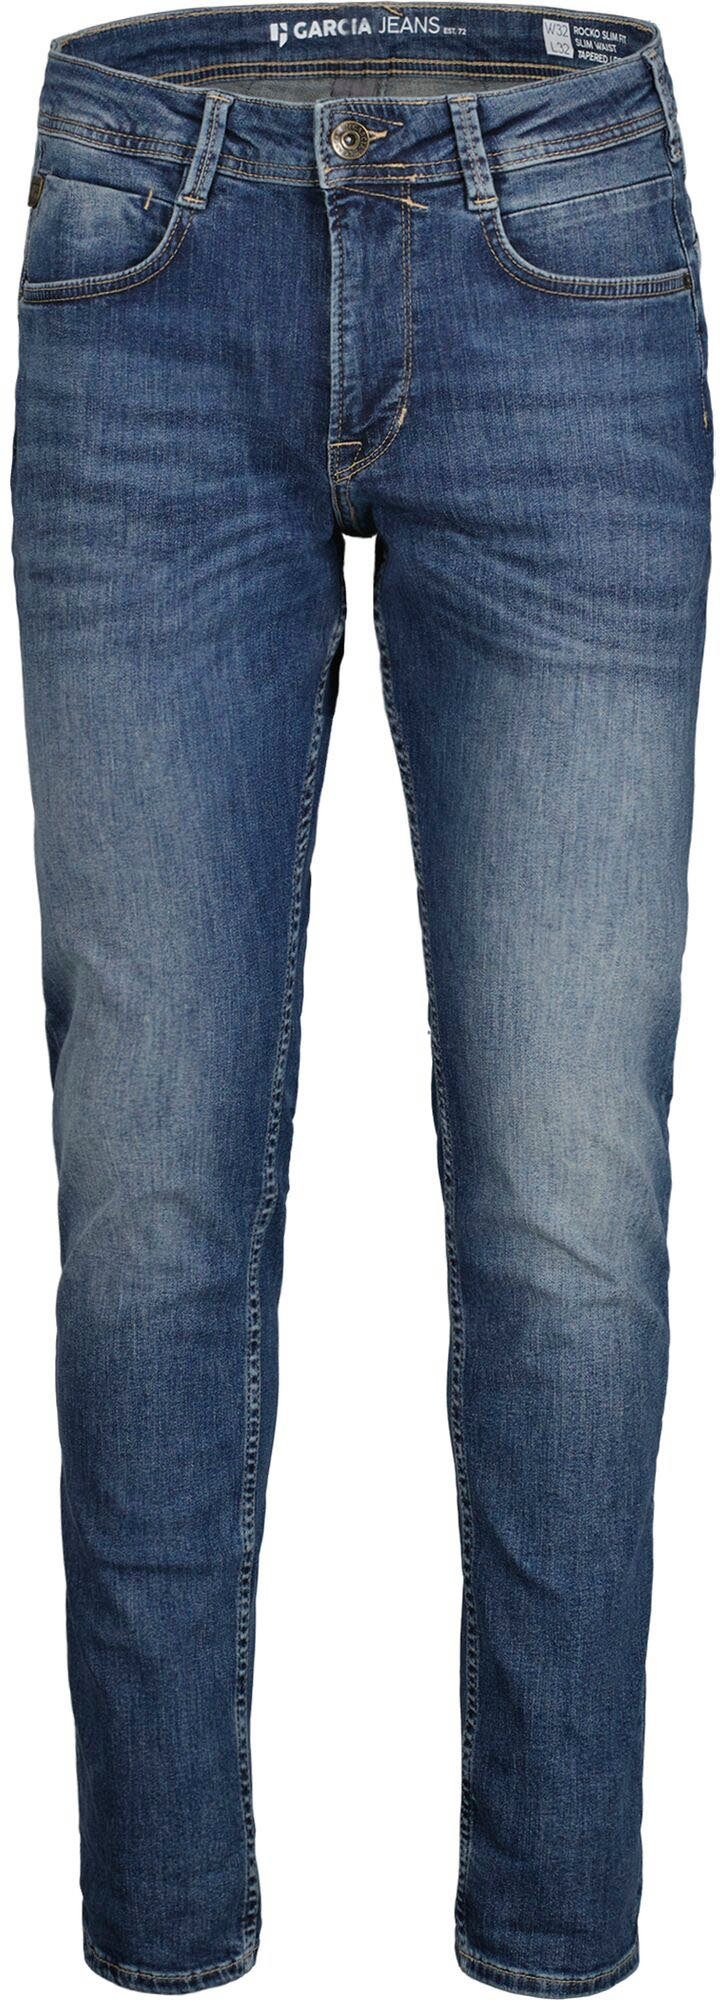 Garcia 5-Pocket-Jeans Rocko in Waschungen used verschiedenen medium